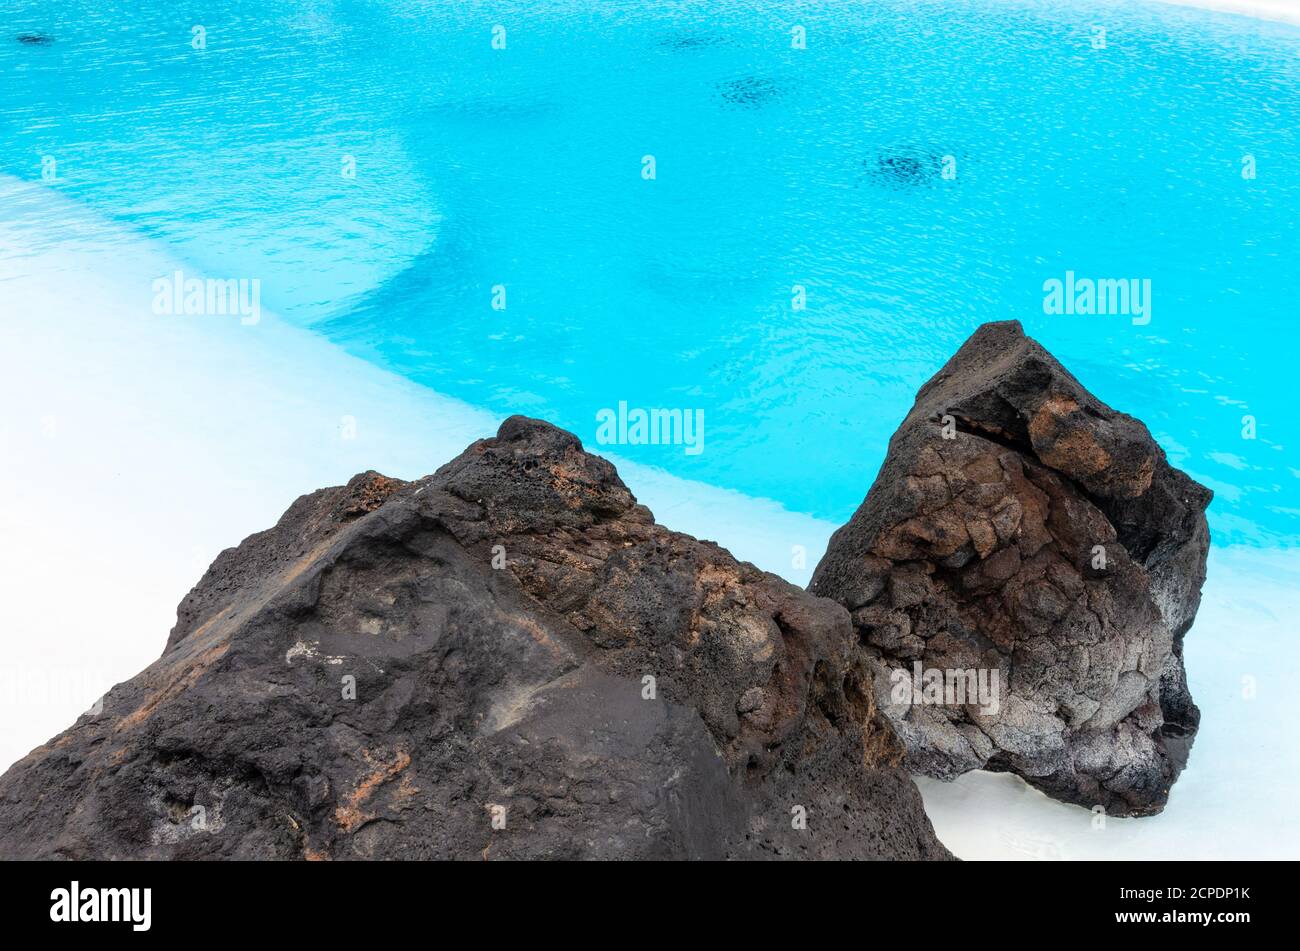 Une piscine avec de l'eau turquoise et des roches volcaniques noires pour décoration Banque D'Images